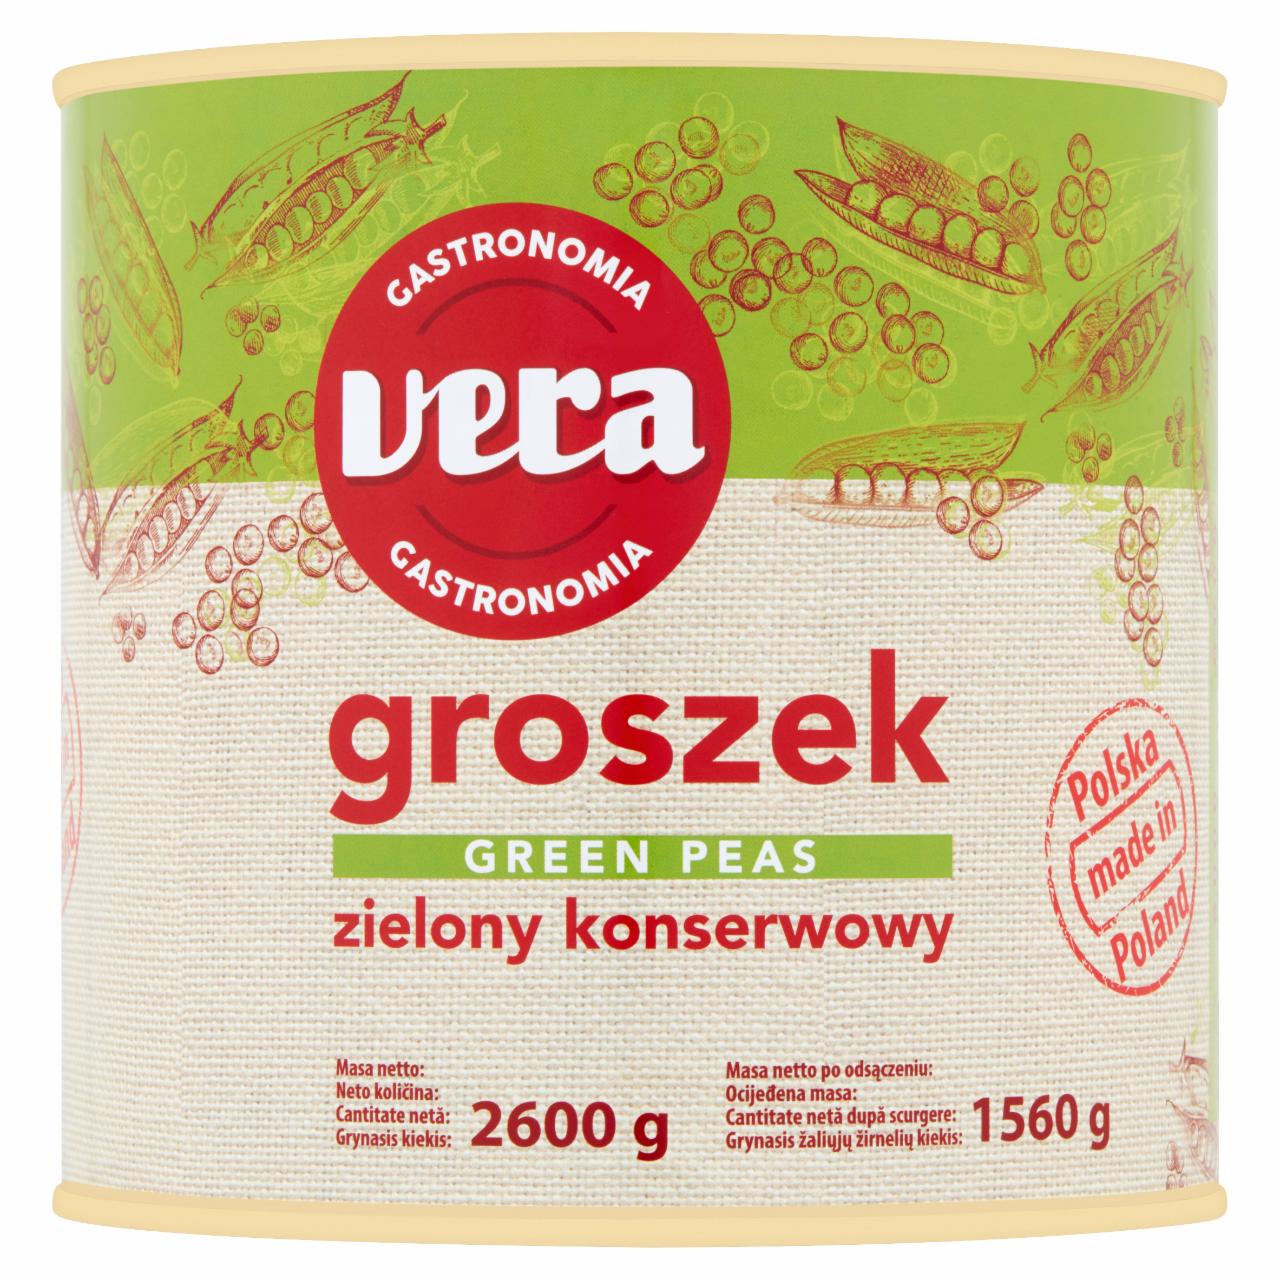 Zdjęcia - Vera Gastronomia Groszek zielony konserwowy 2600 g